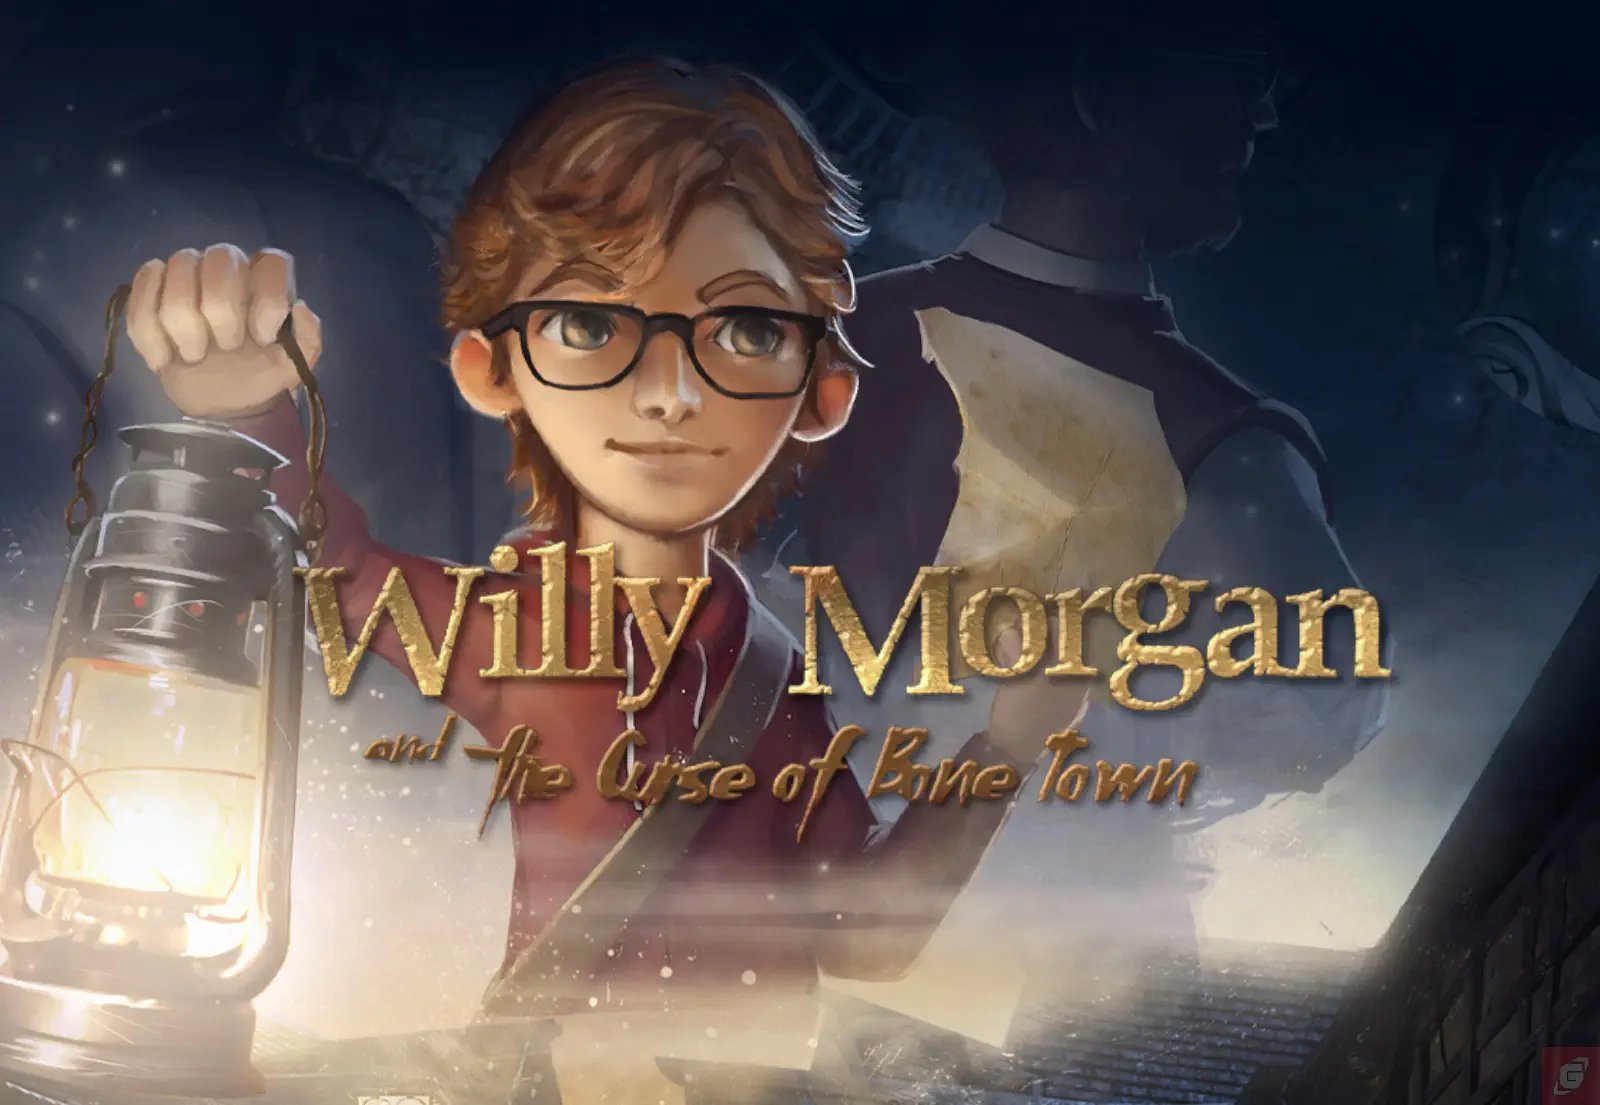 Willy Morgan and the Curse of Bone Town - Unsere Eindrücke zum Spiel!